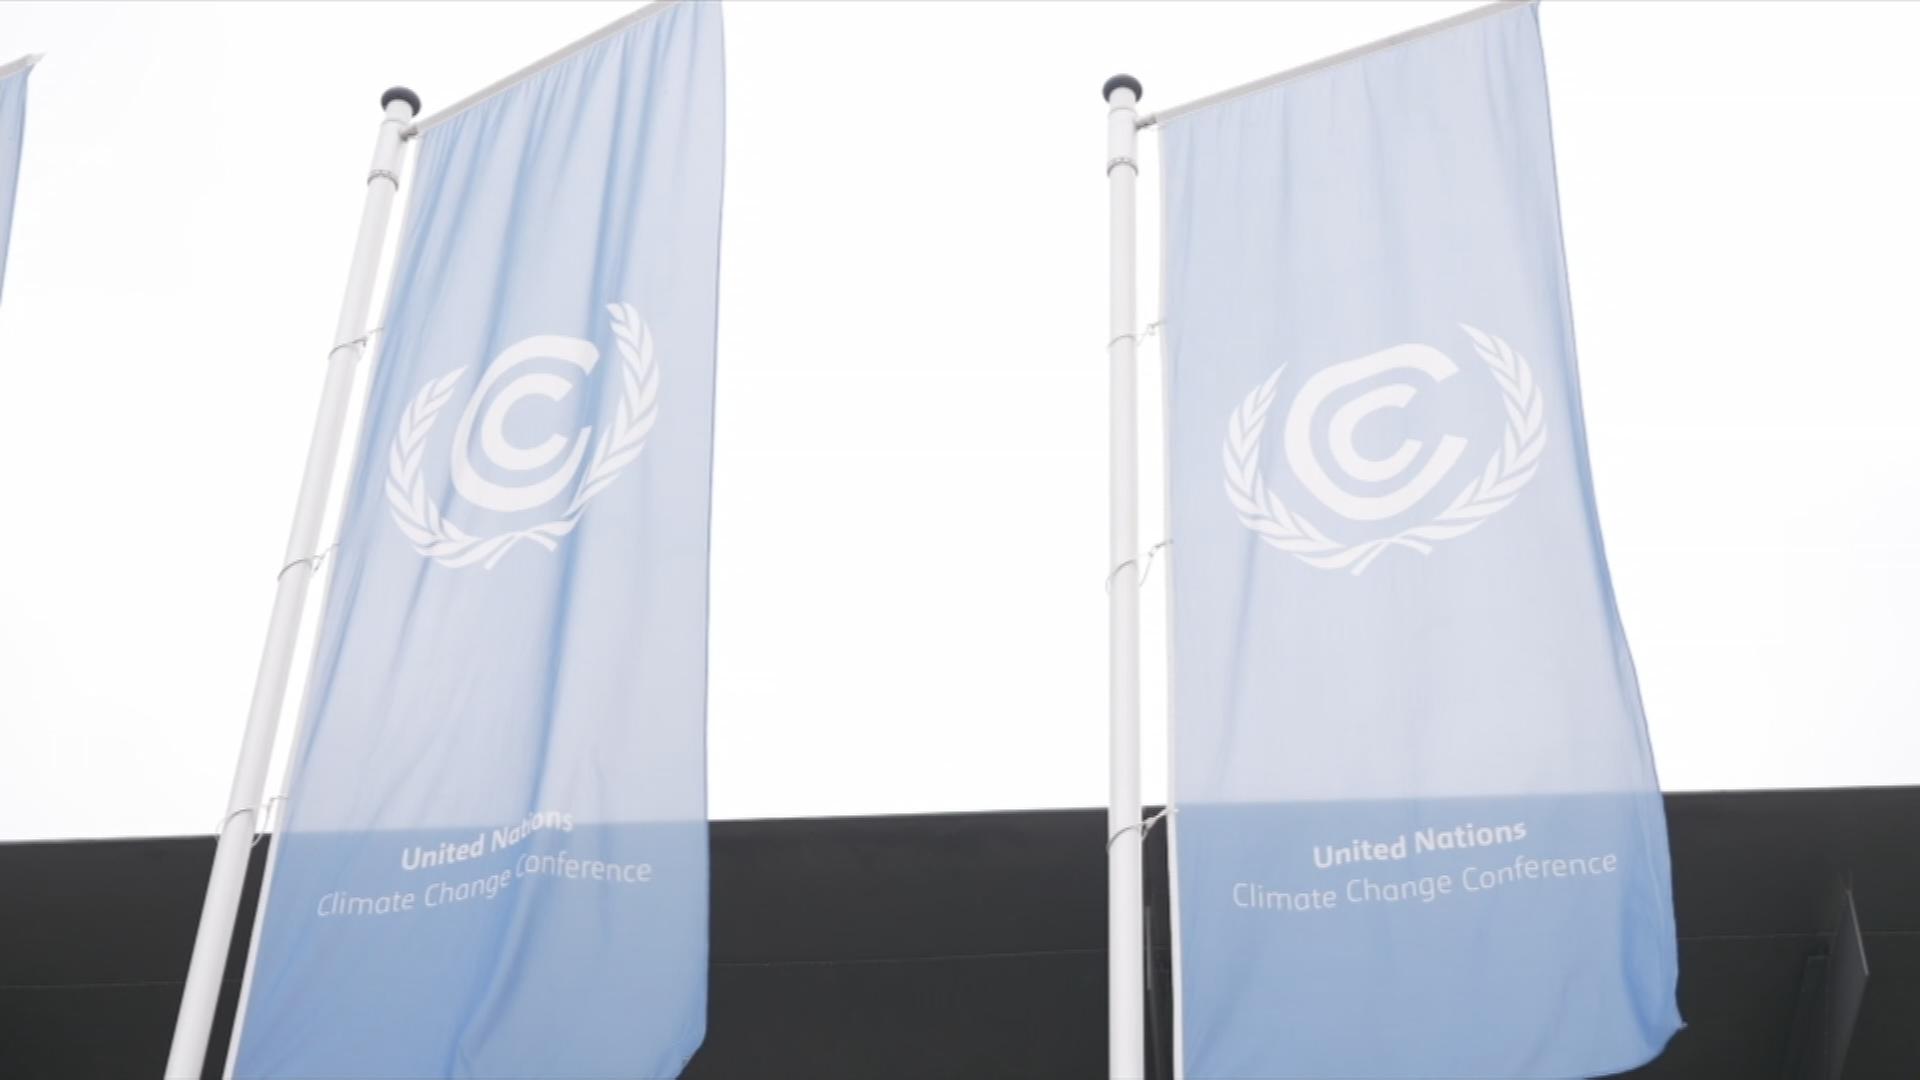 Blaue Flaggen mit UN-Logo wehen im Wind.